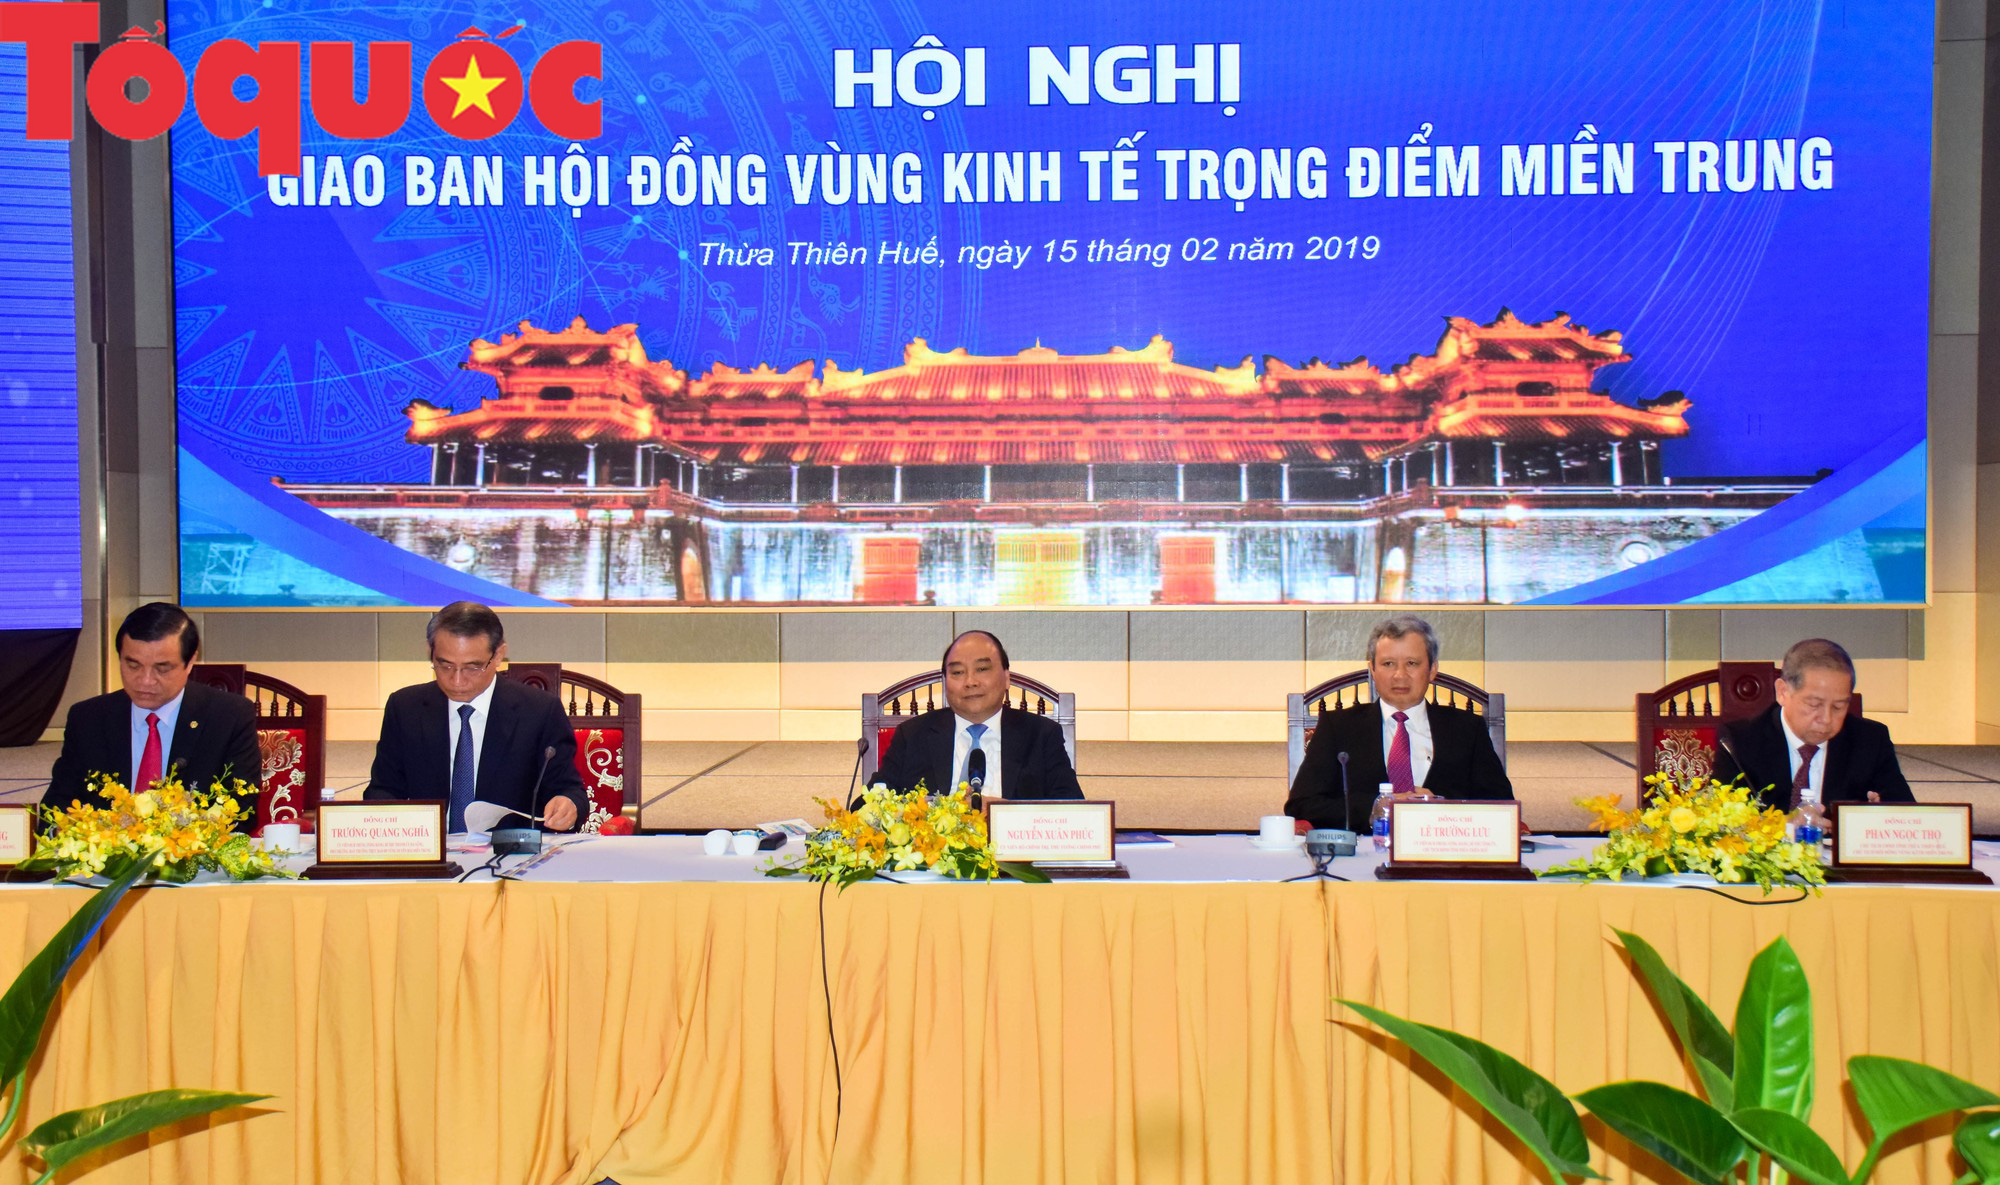 Thủ tướng Nguyễn Xuân Phúc: Các tỉnh miền Trung cần tự lực, tự cường đi trên đôi chân của mình - Ảnh 2.